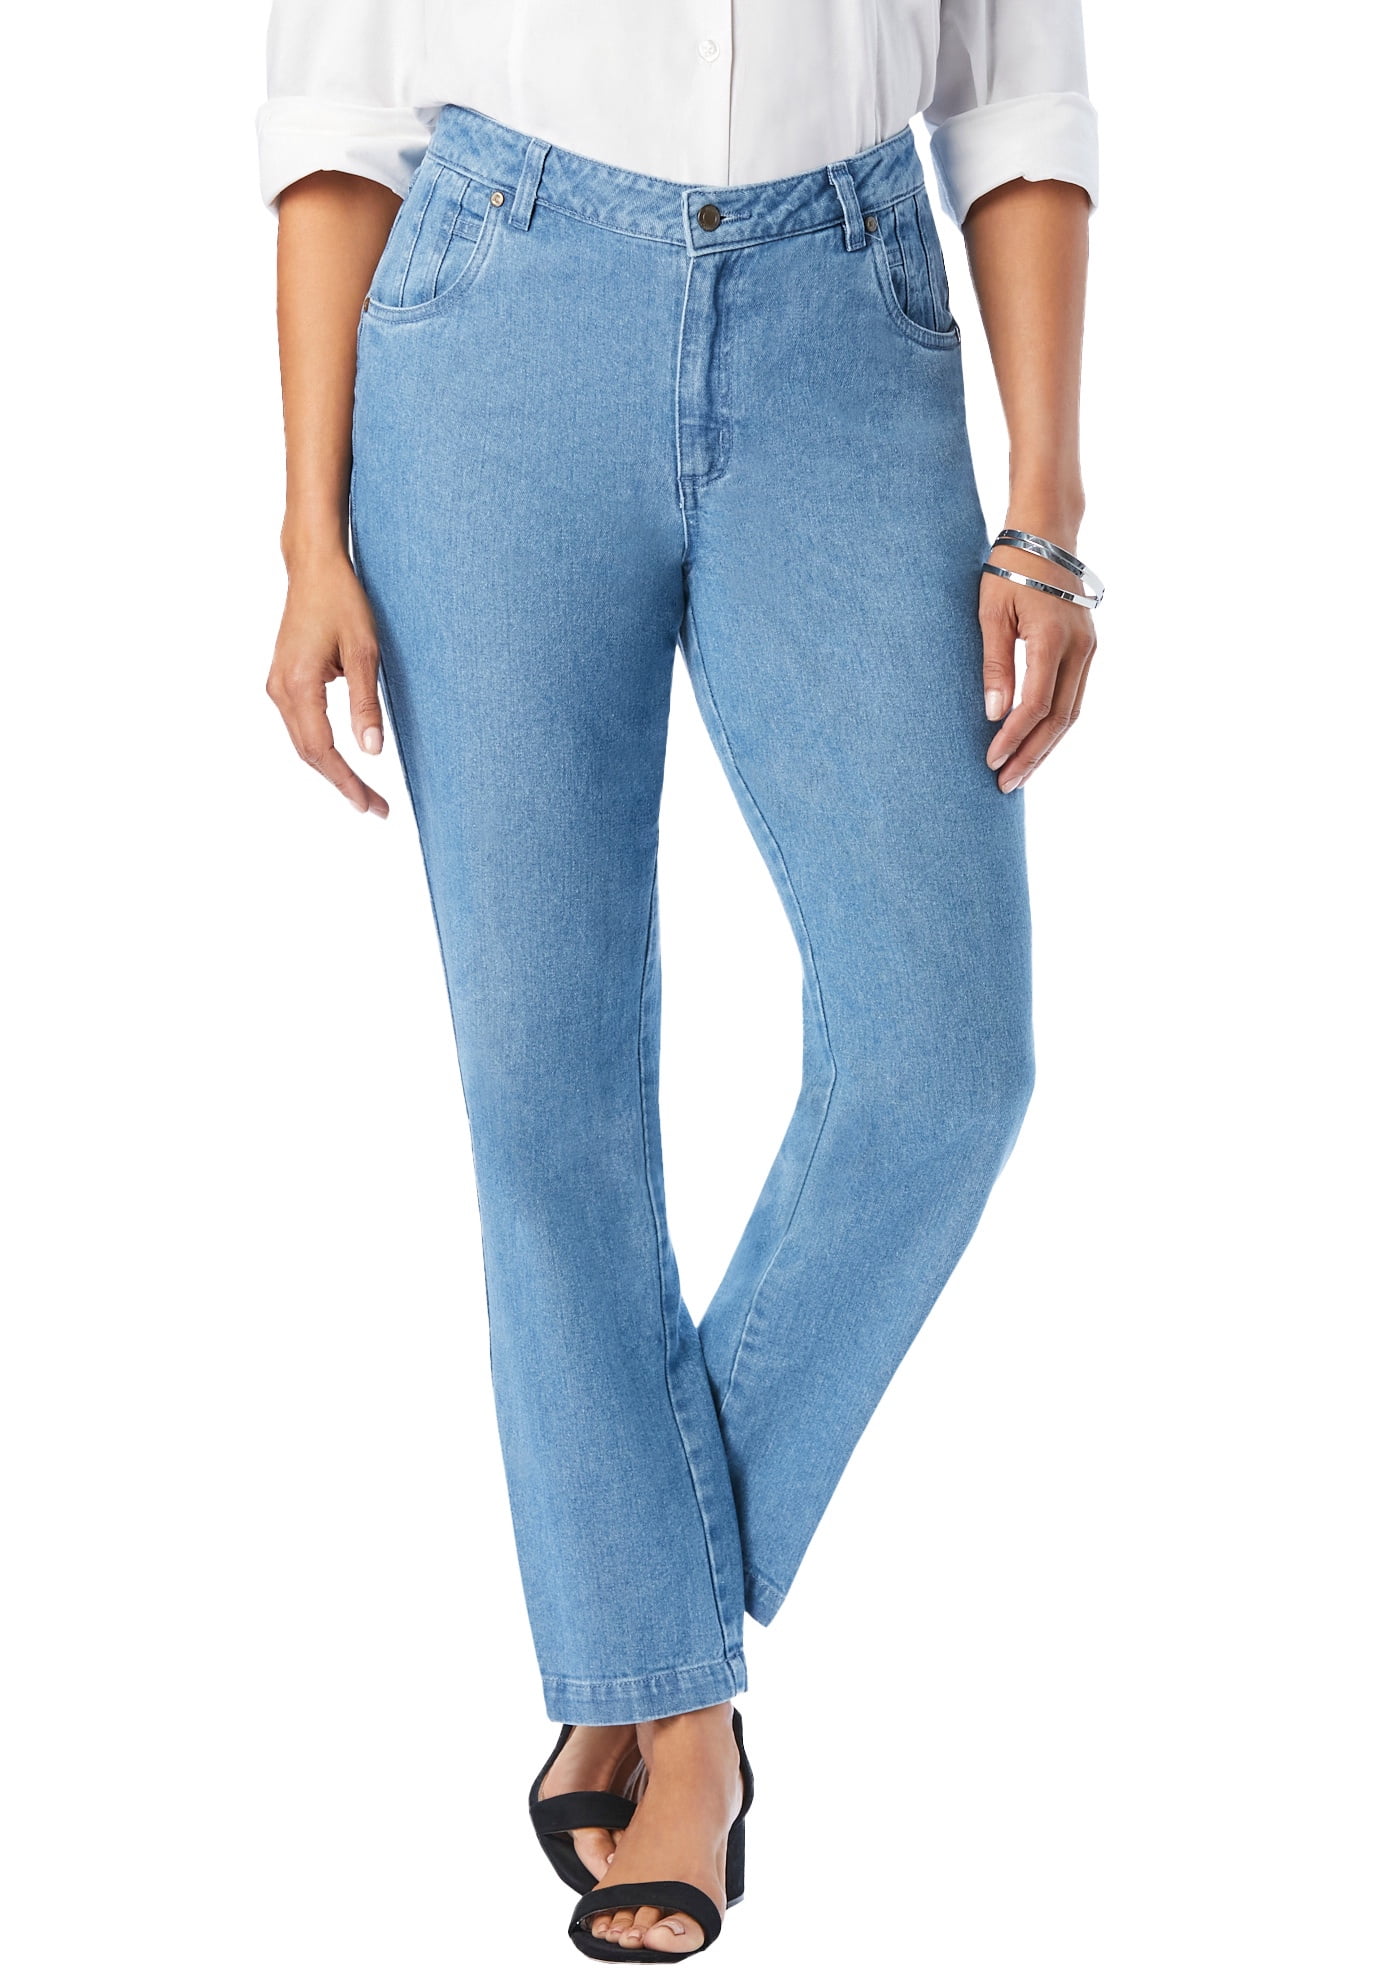 Jessica Women's Plus Size Classic Cotton Denim Jeans 100% Cotton Walmart.com